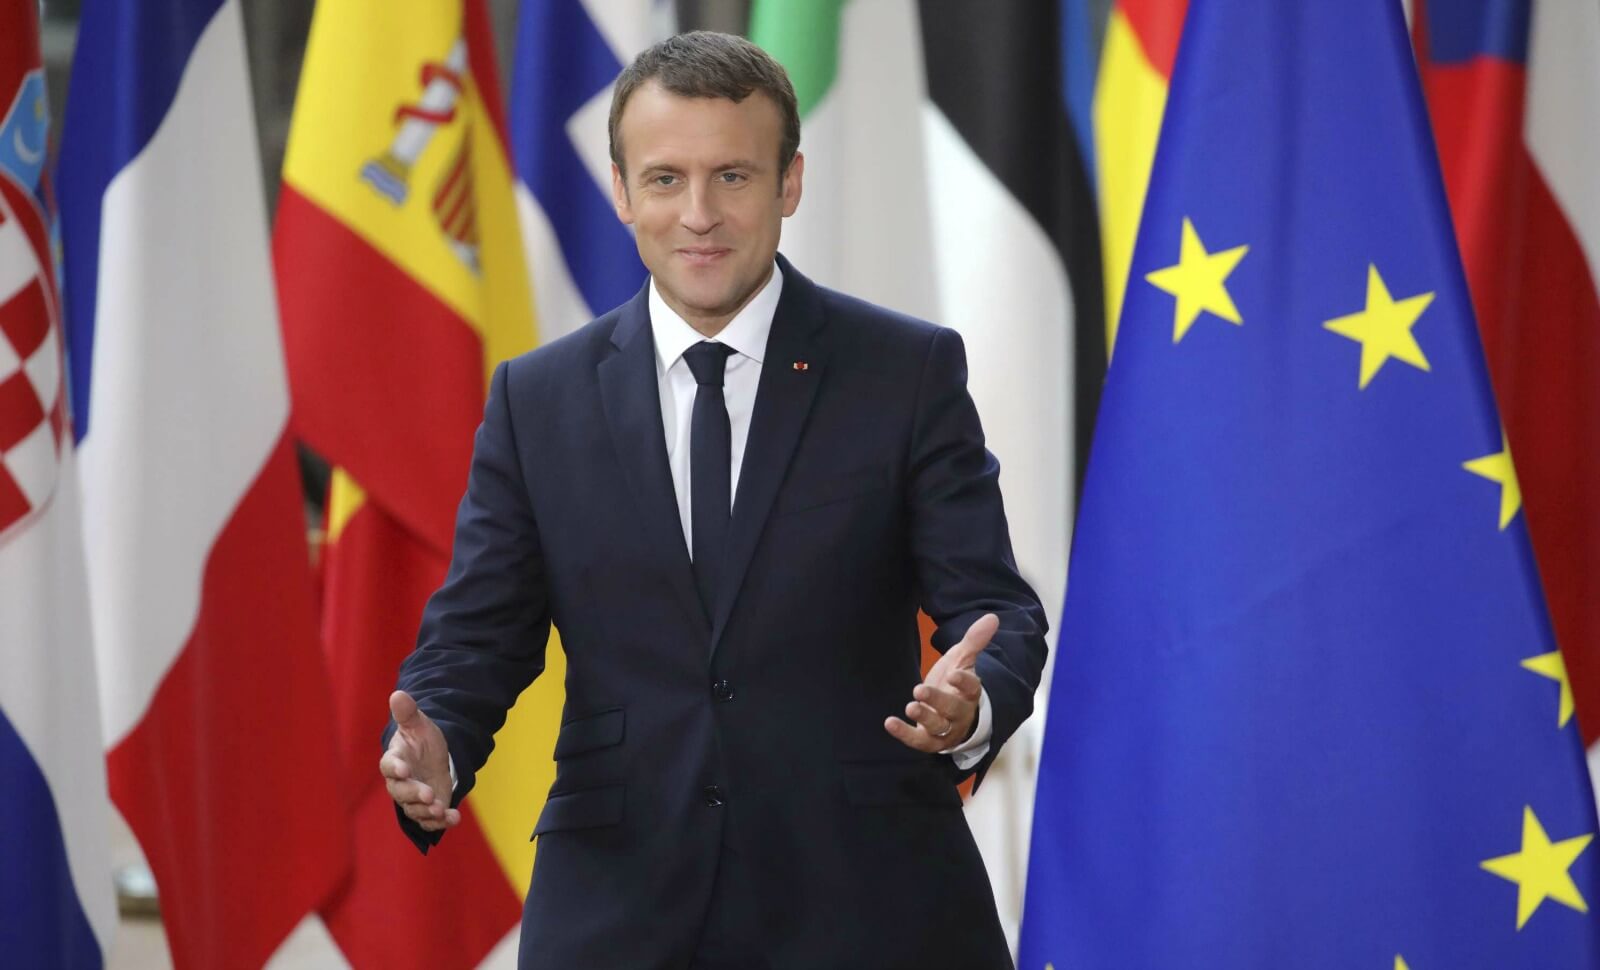 Il l’a fait: Macron a dit le mot « islamisme »